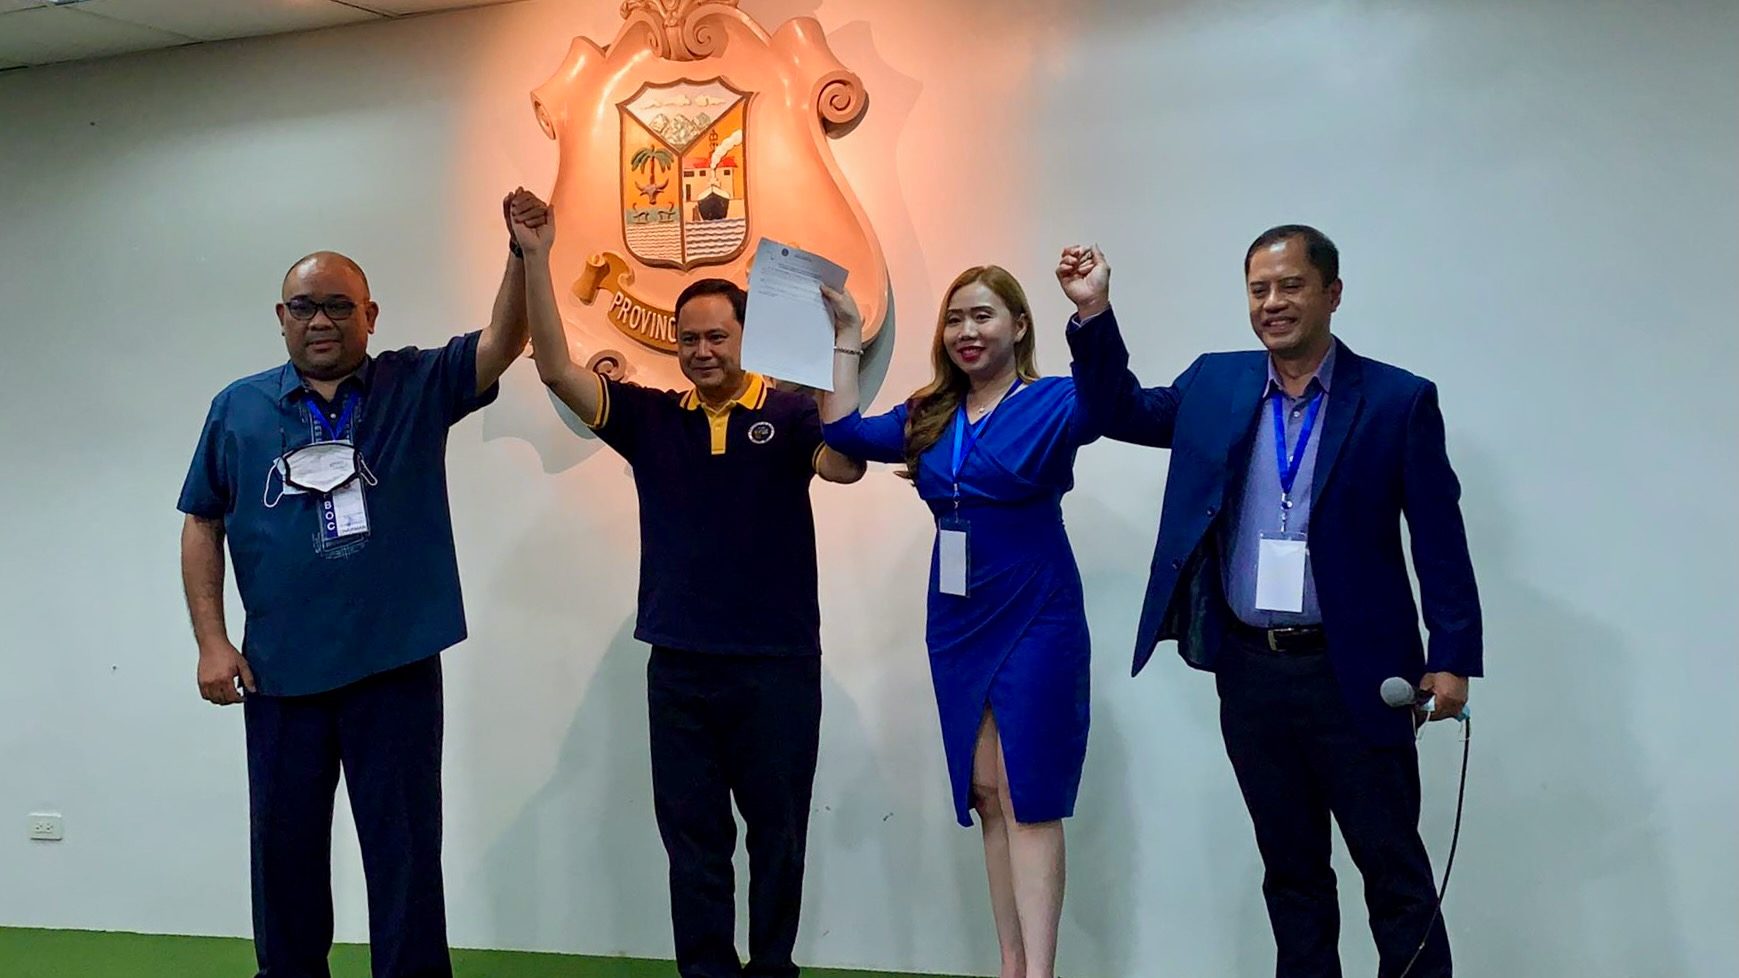 Iloilo Governor Art Defensor glides to second term